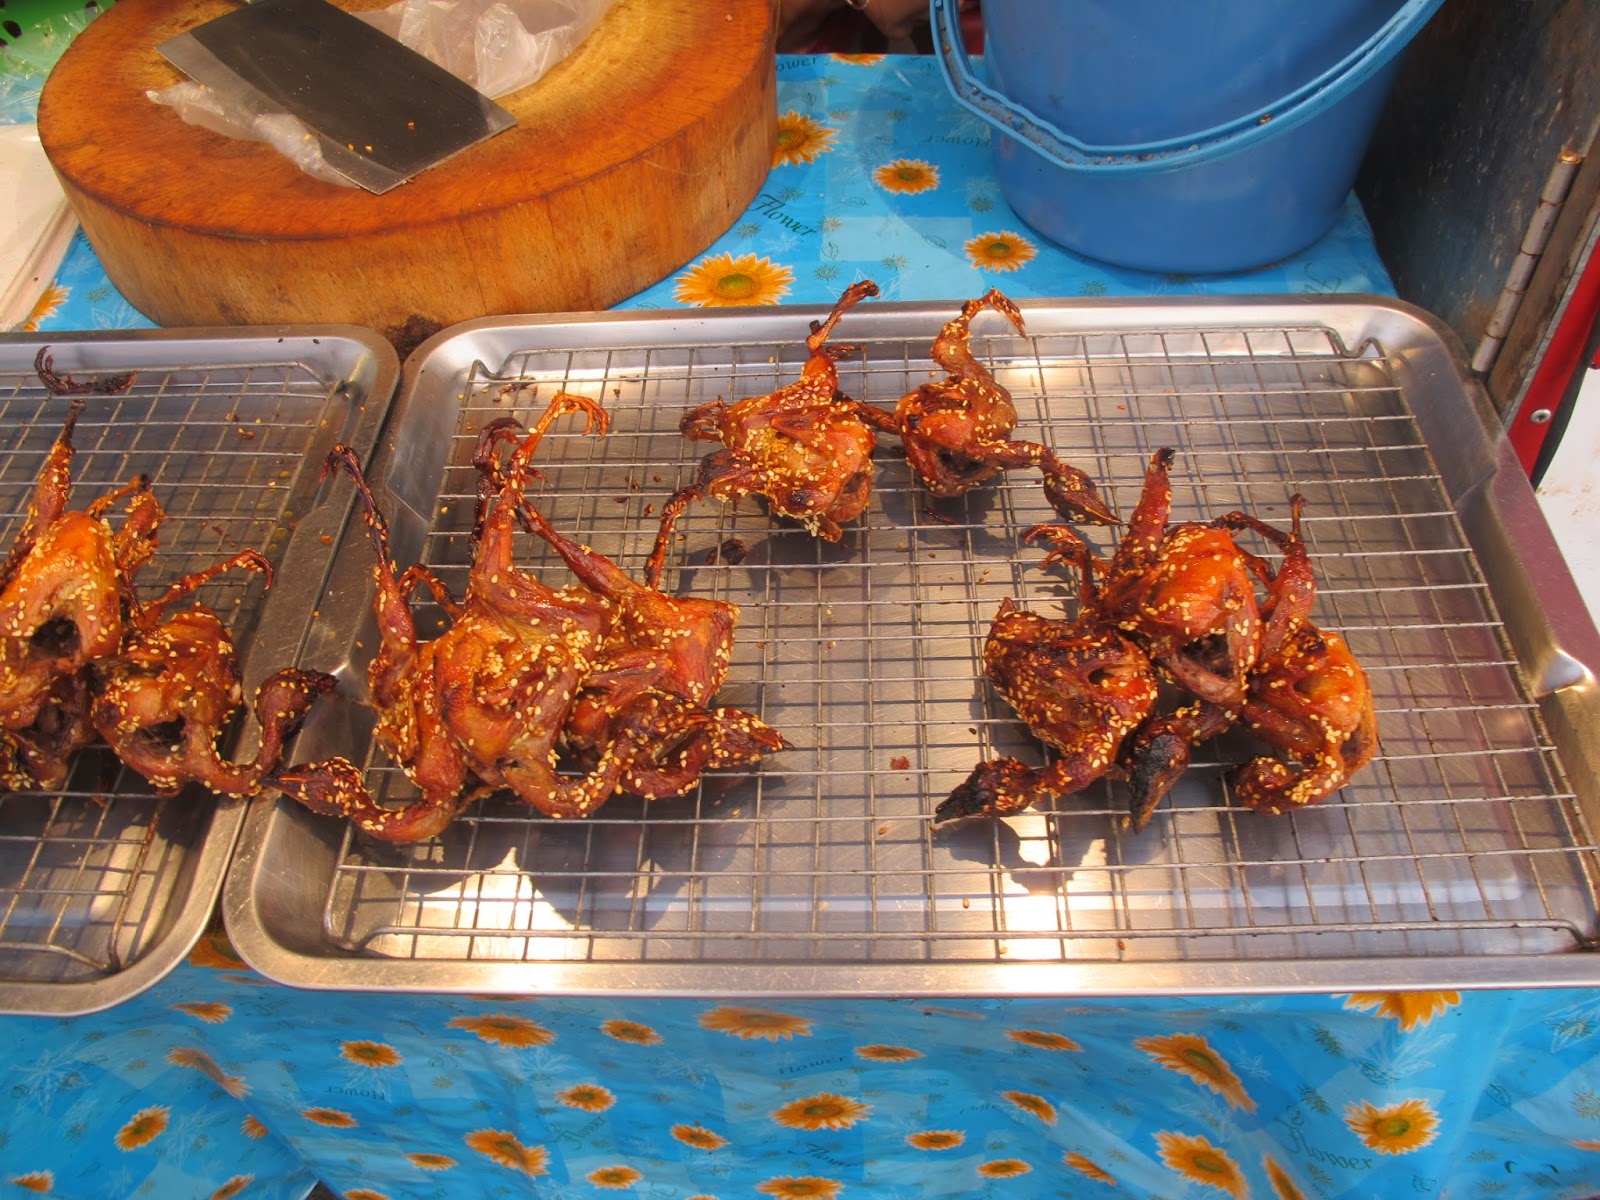 thai street food, phuket fair, food stand, roasted quail